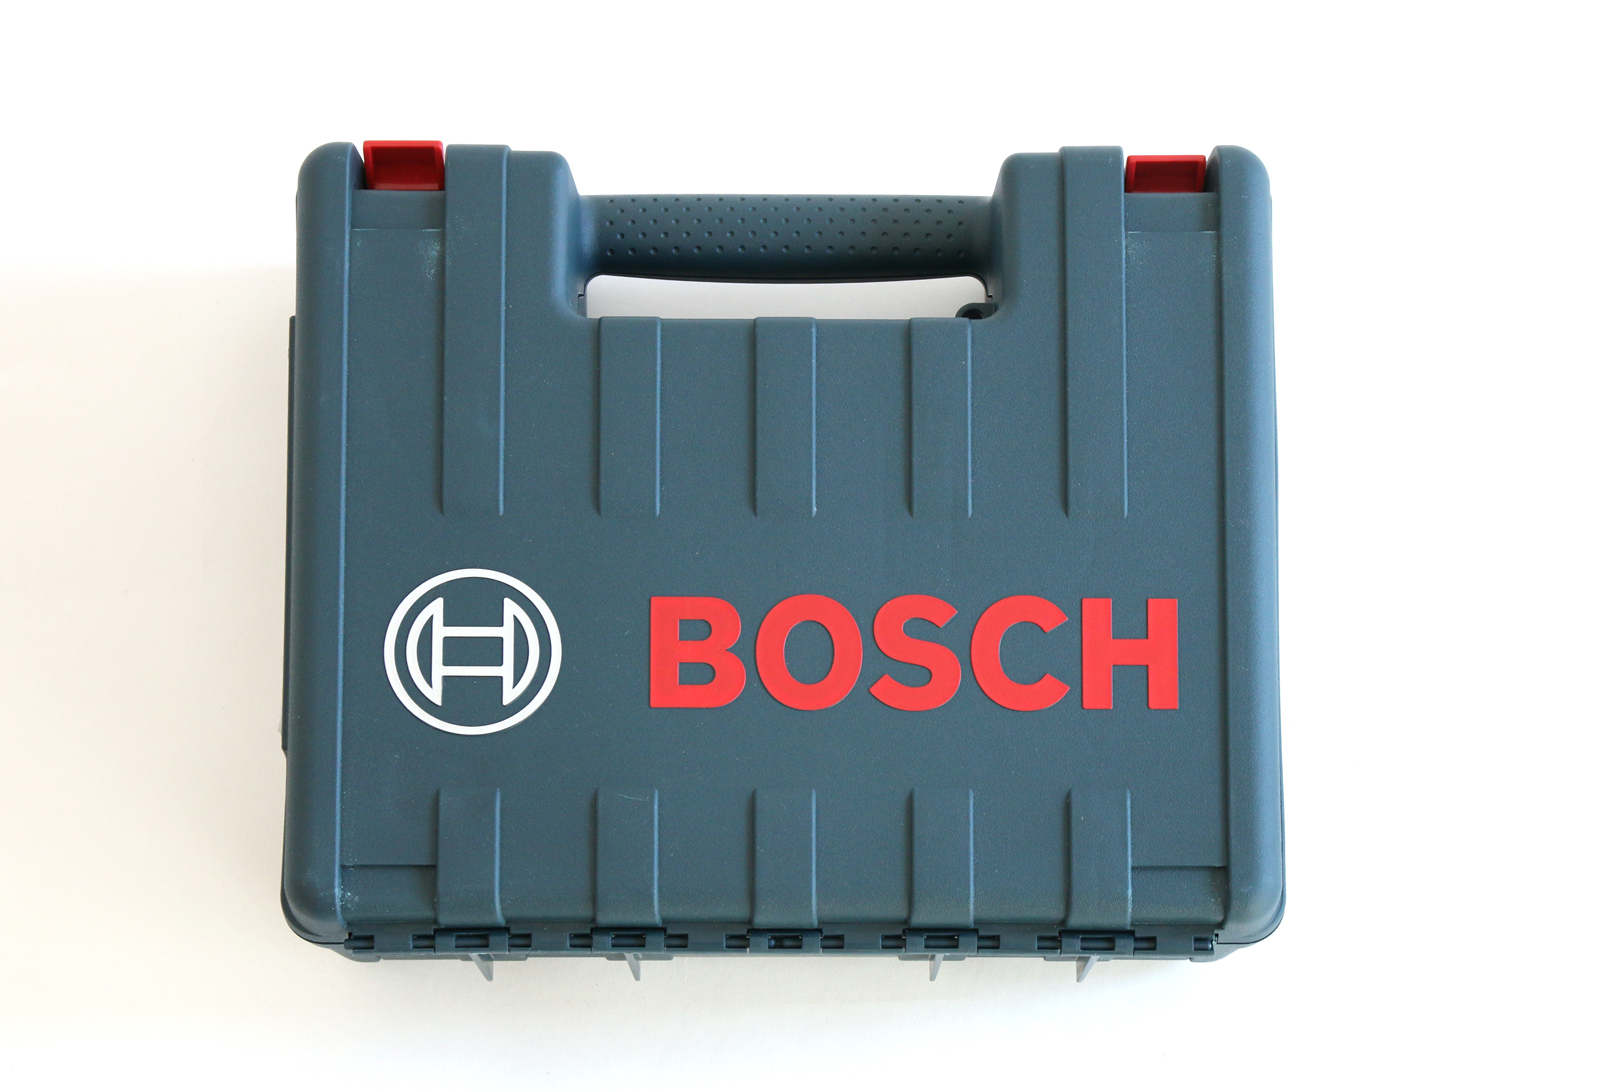 基本の道具工具 BOSCHインパクトドライバー（ビットパーツ付き） DM-TO003-17-G170 専用ボックスもかっこいいですね